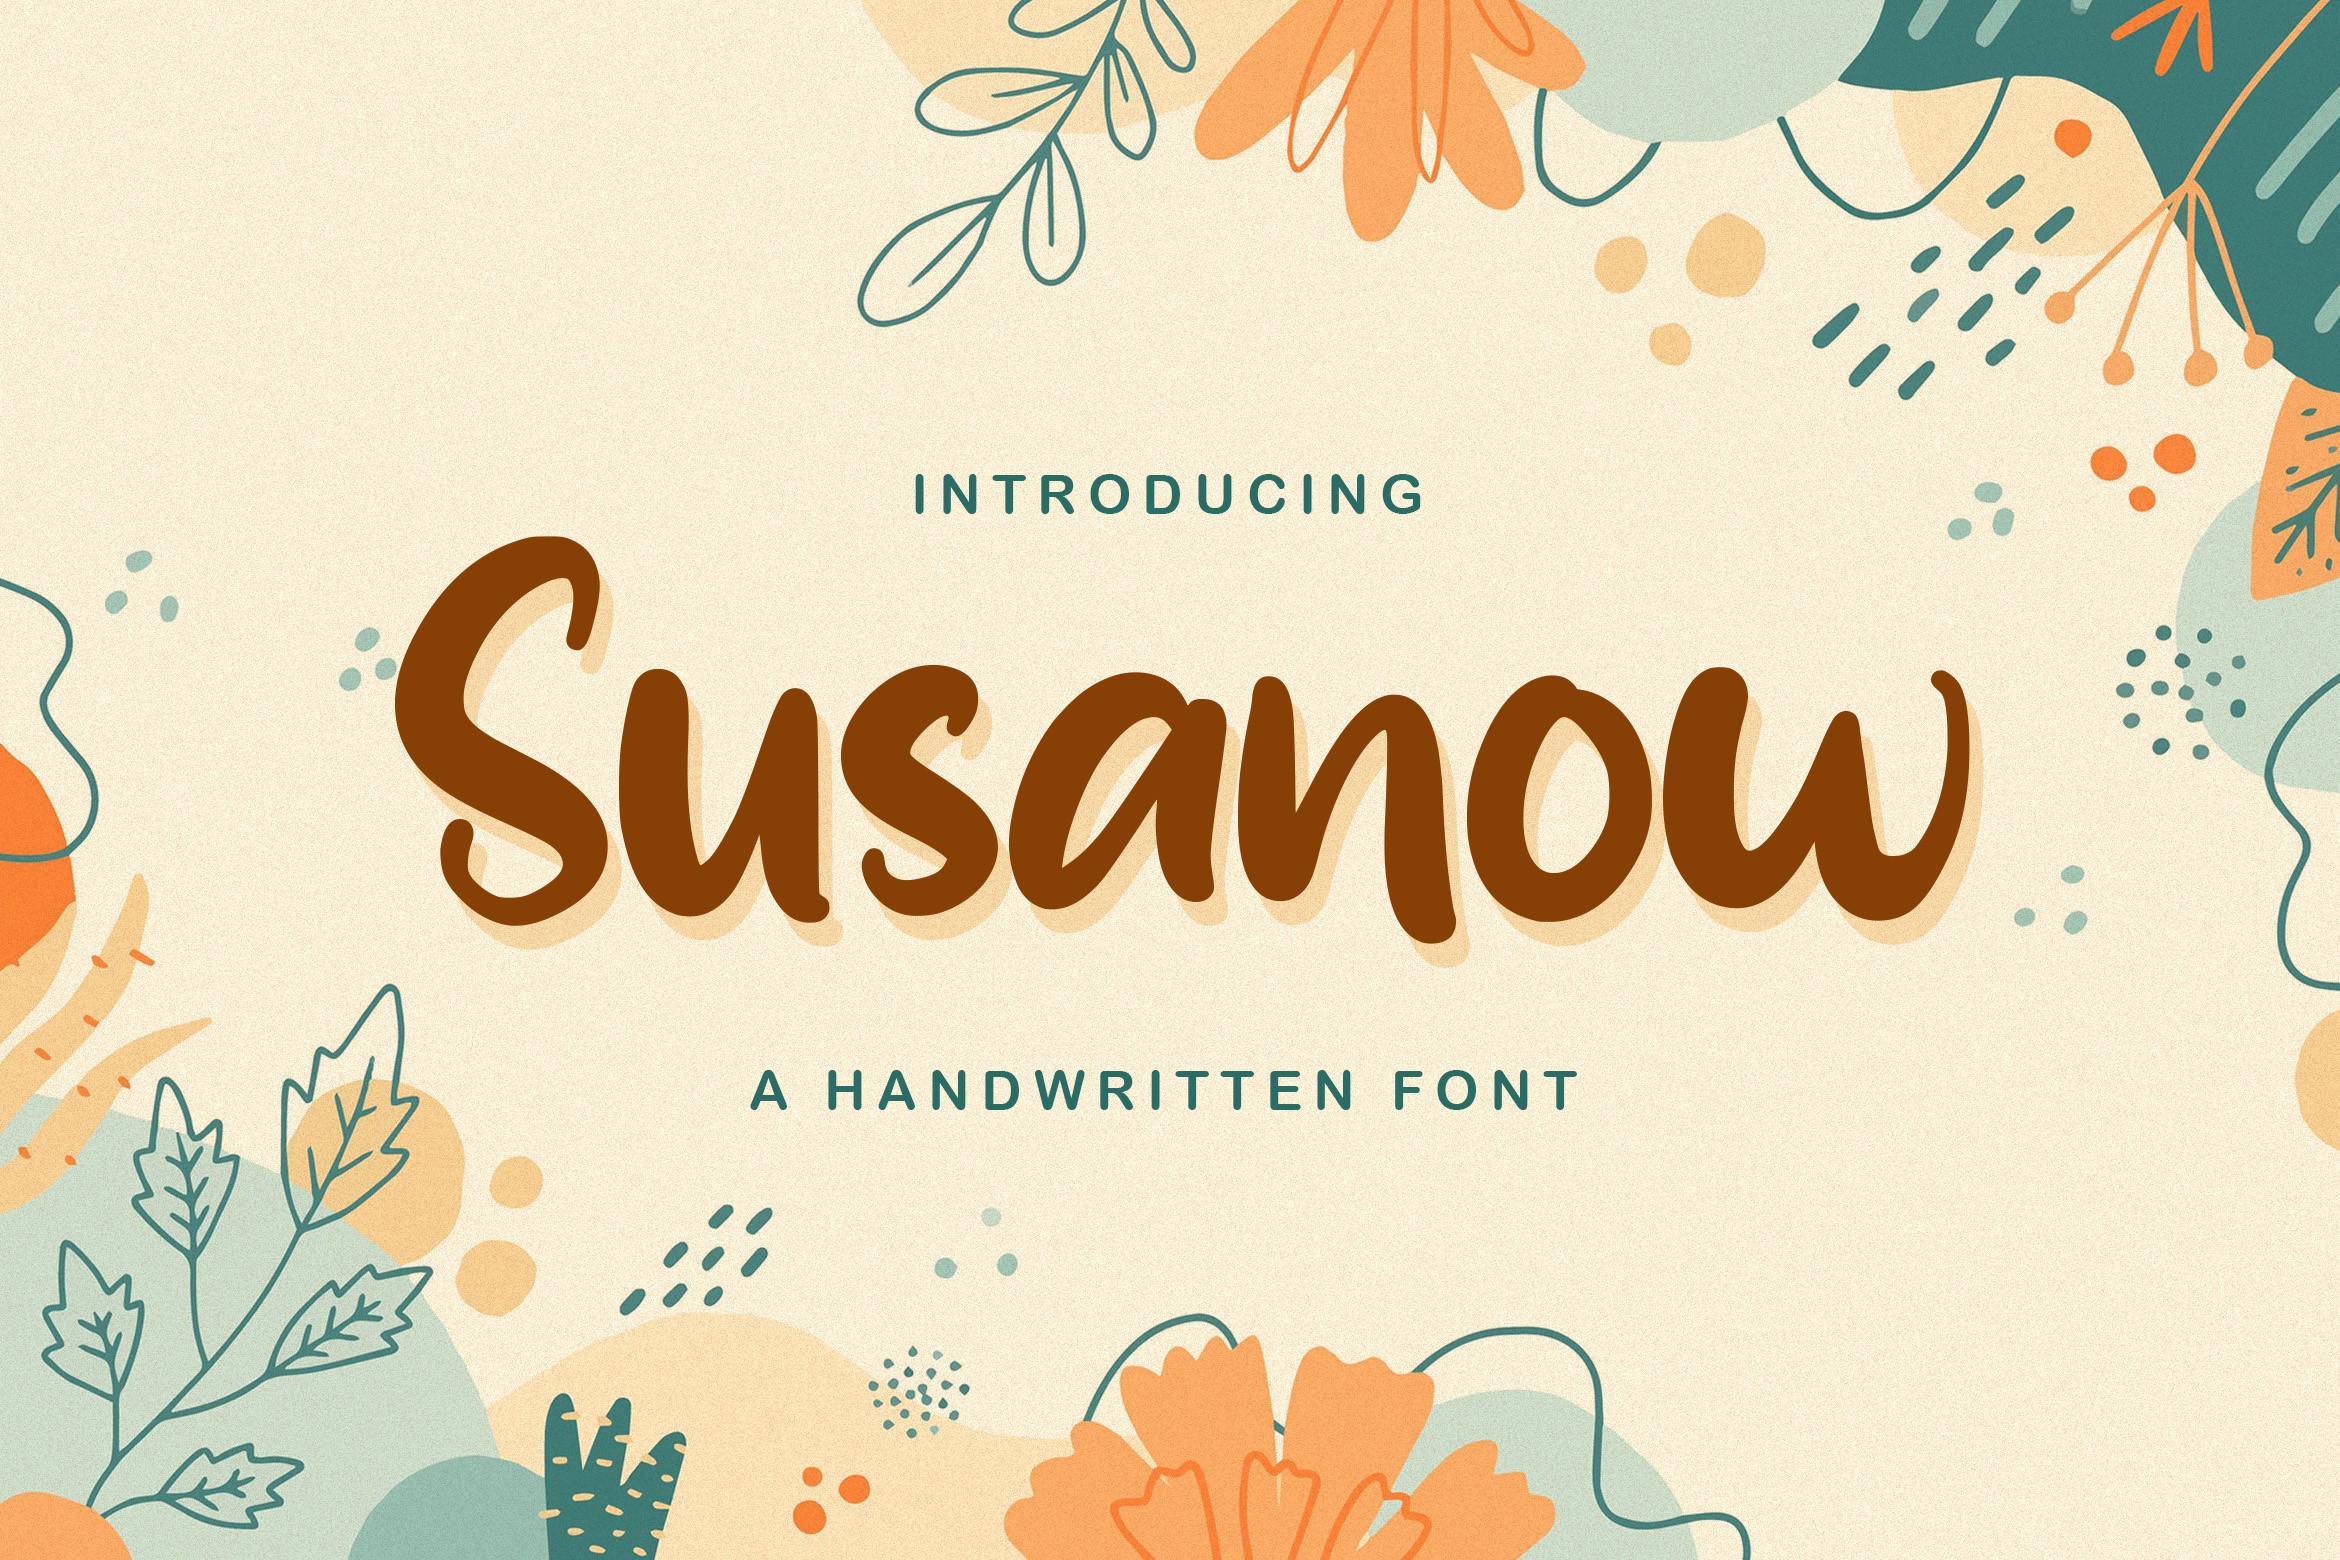 Susanow Font